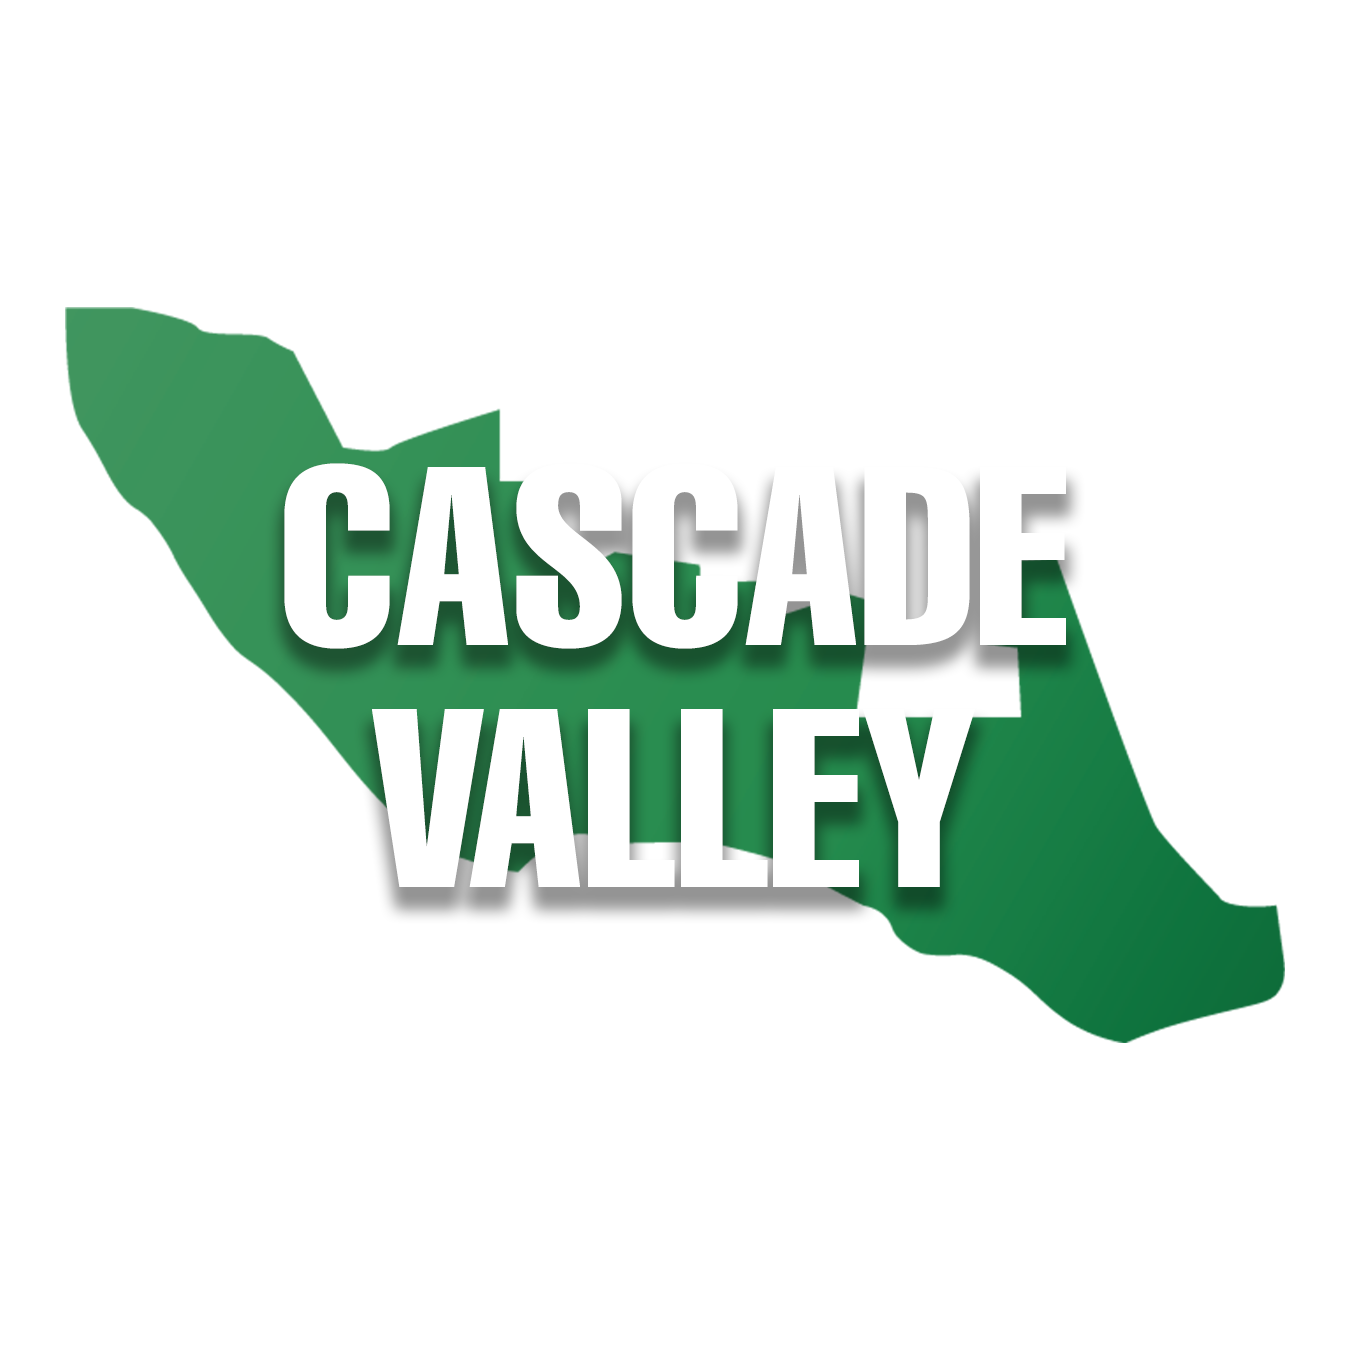 Cascade Valley